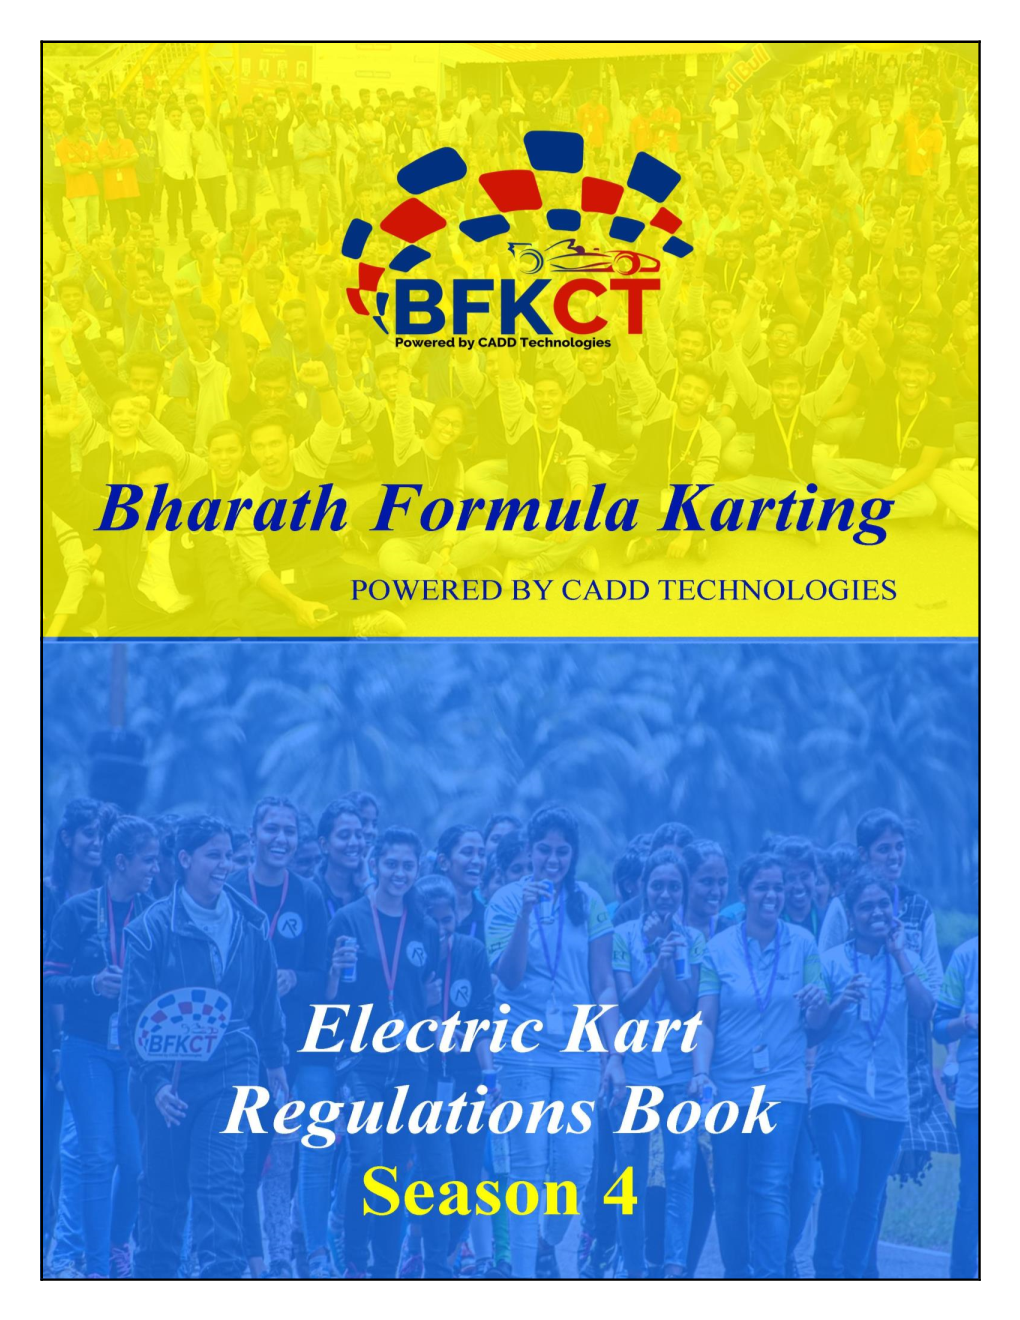 BFKCT Electric Kart Regulations Book (BFEKR) – E Kart V 1.0